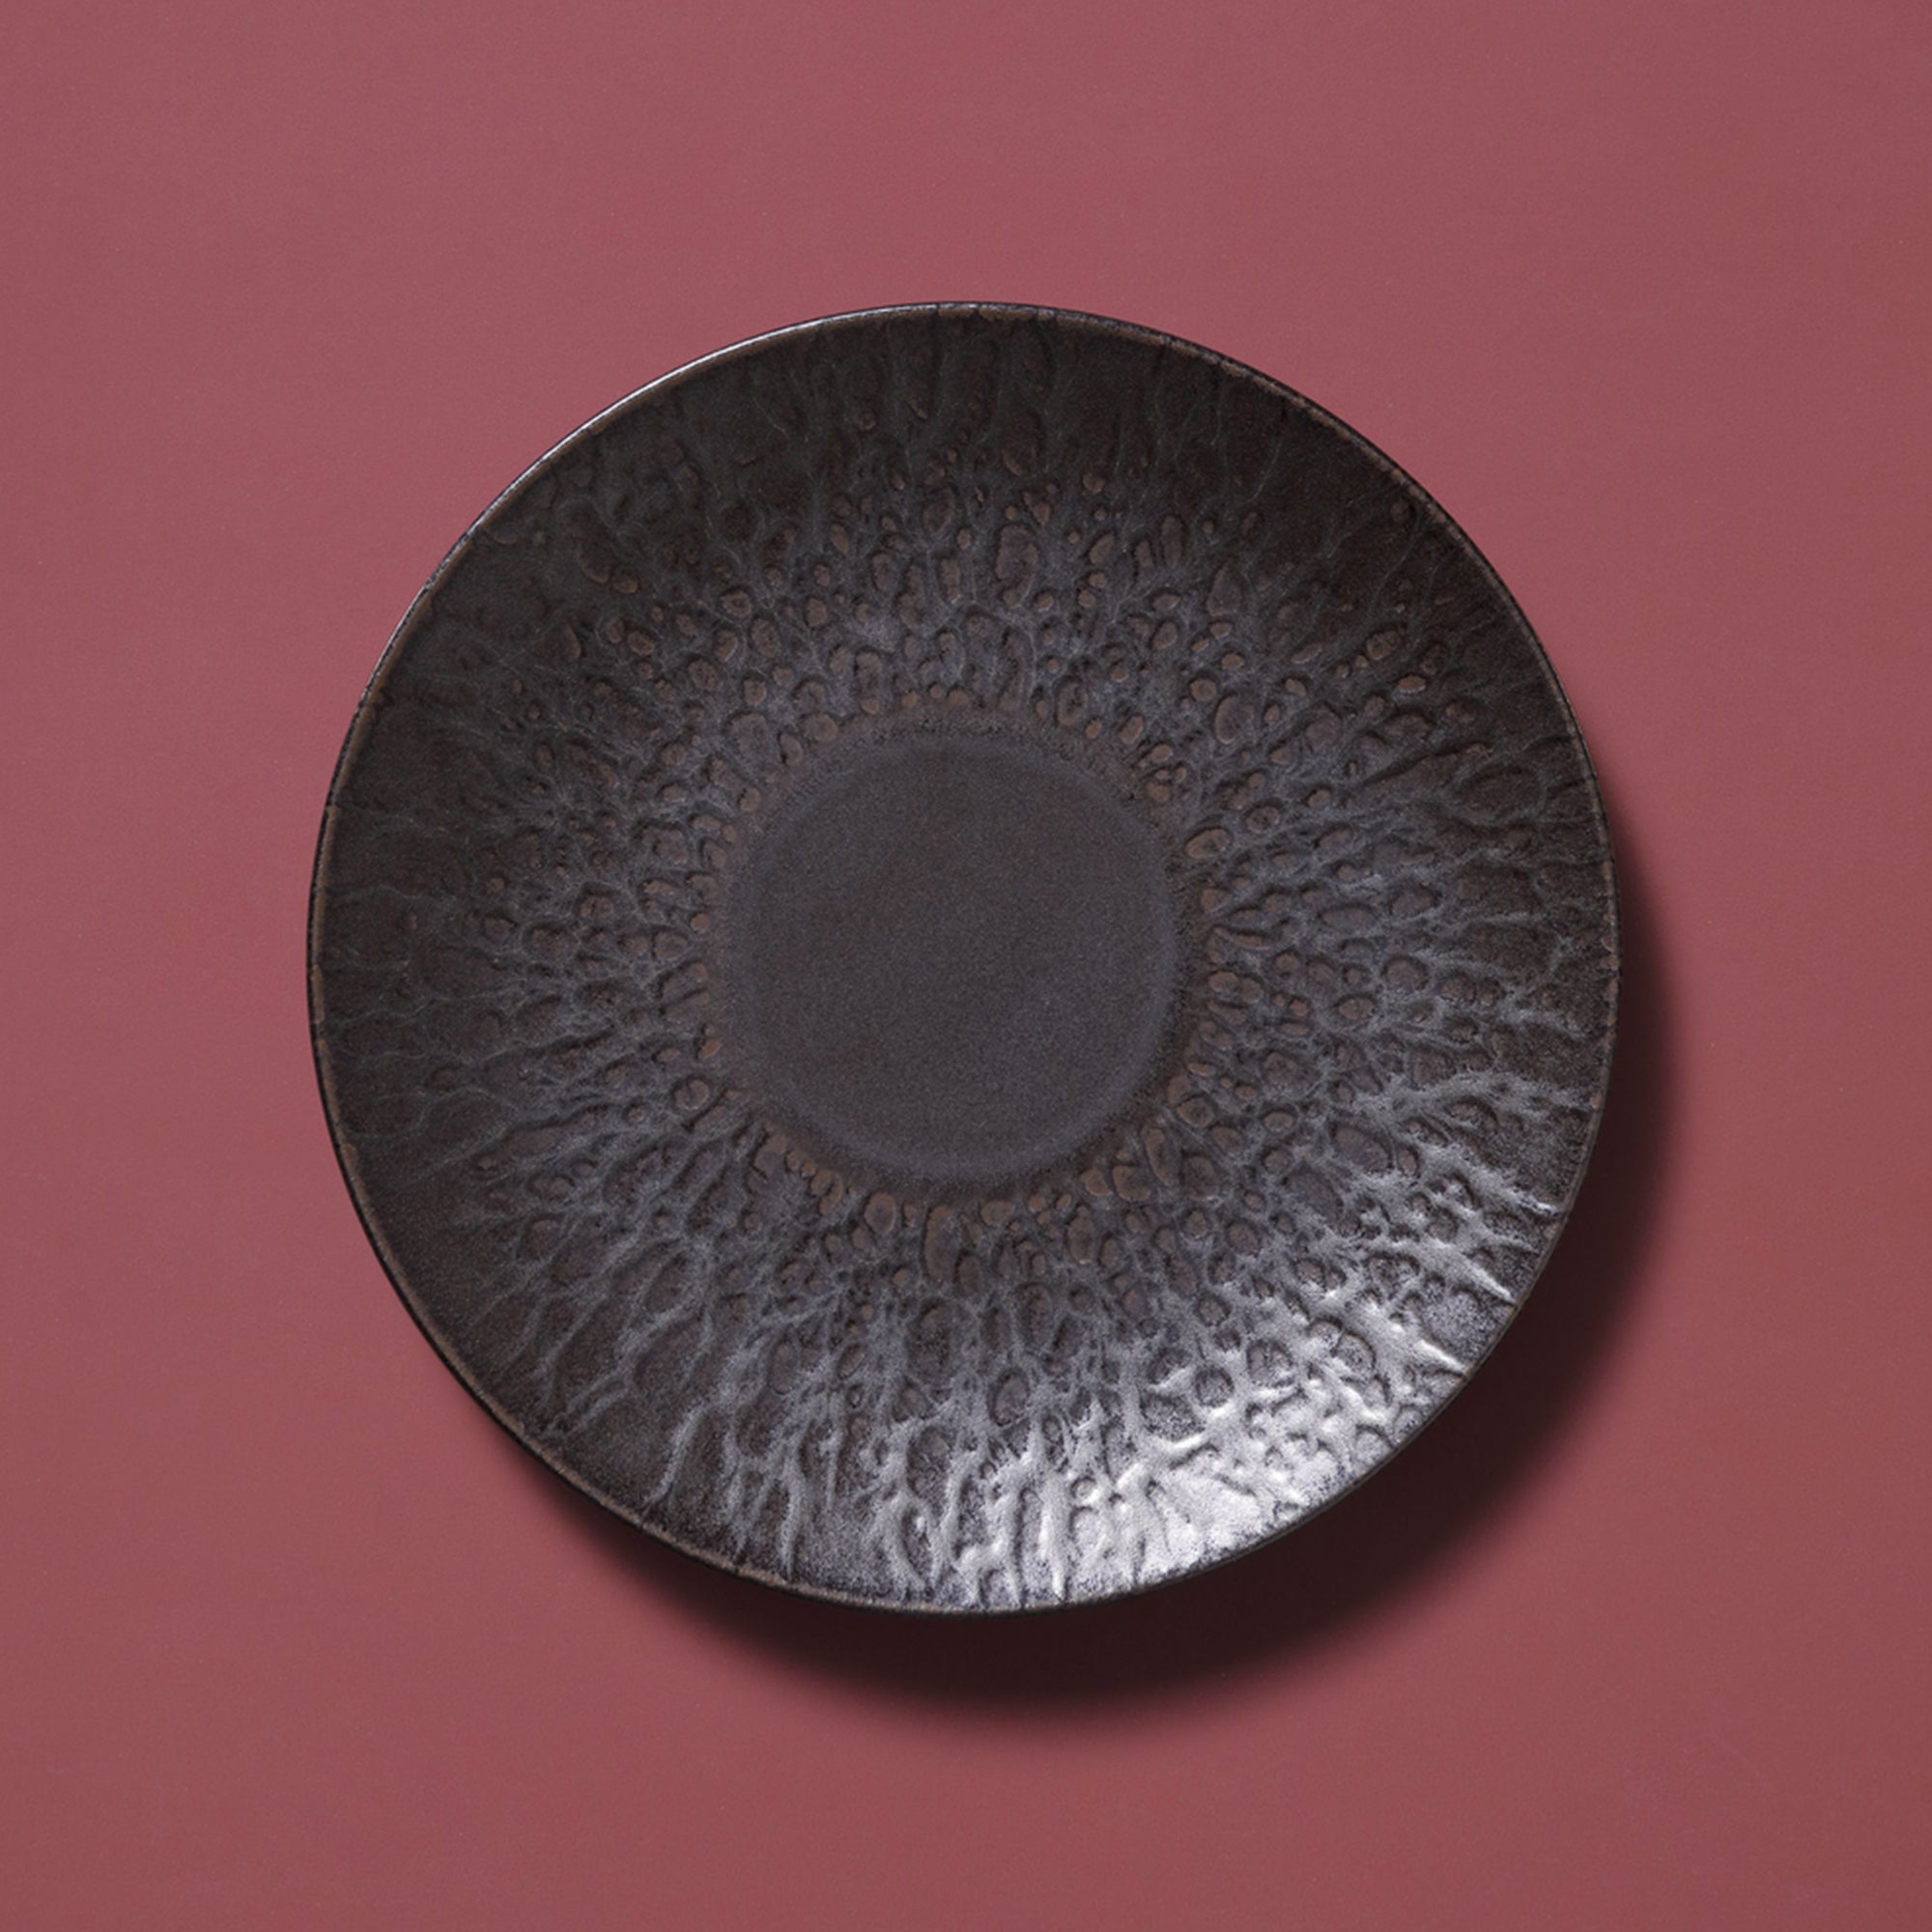 (6 stykker) Rust - Plate flat - Ø 21 cm - Brun